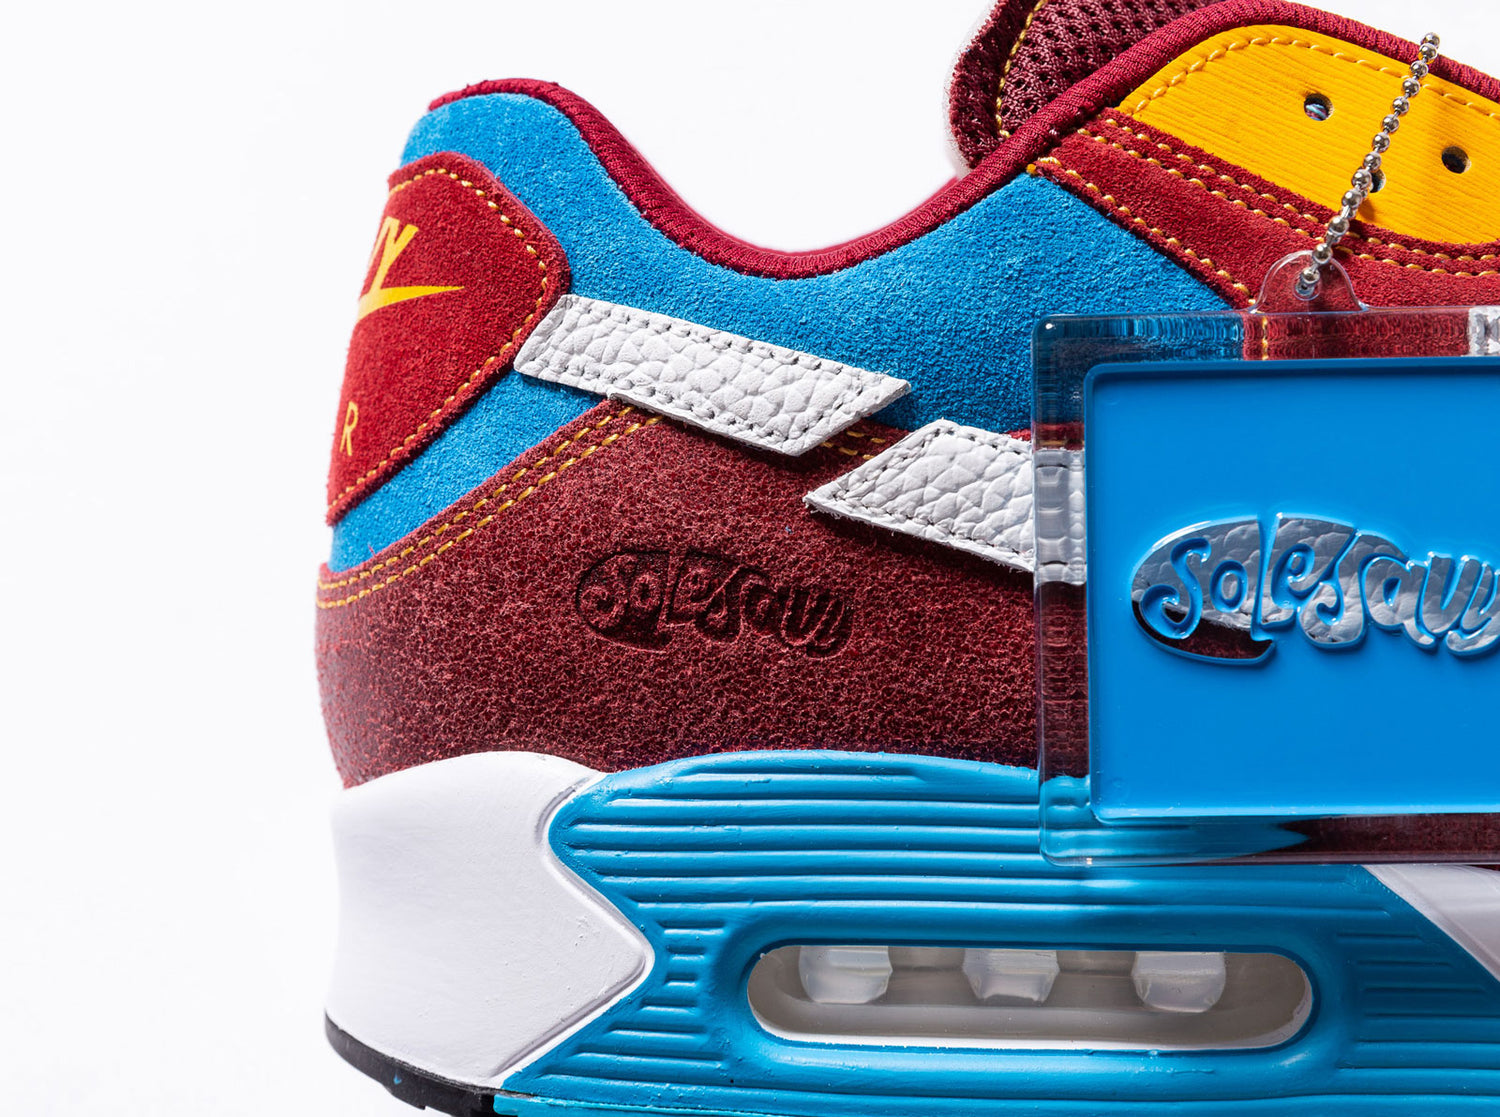 SS2 Bespoke Sneaker – SoleSavy